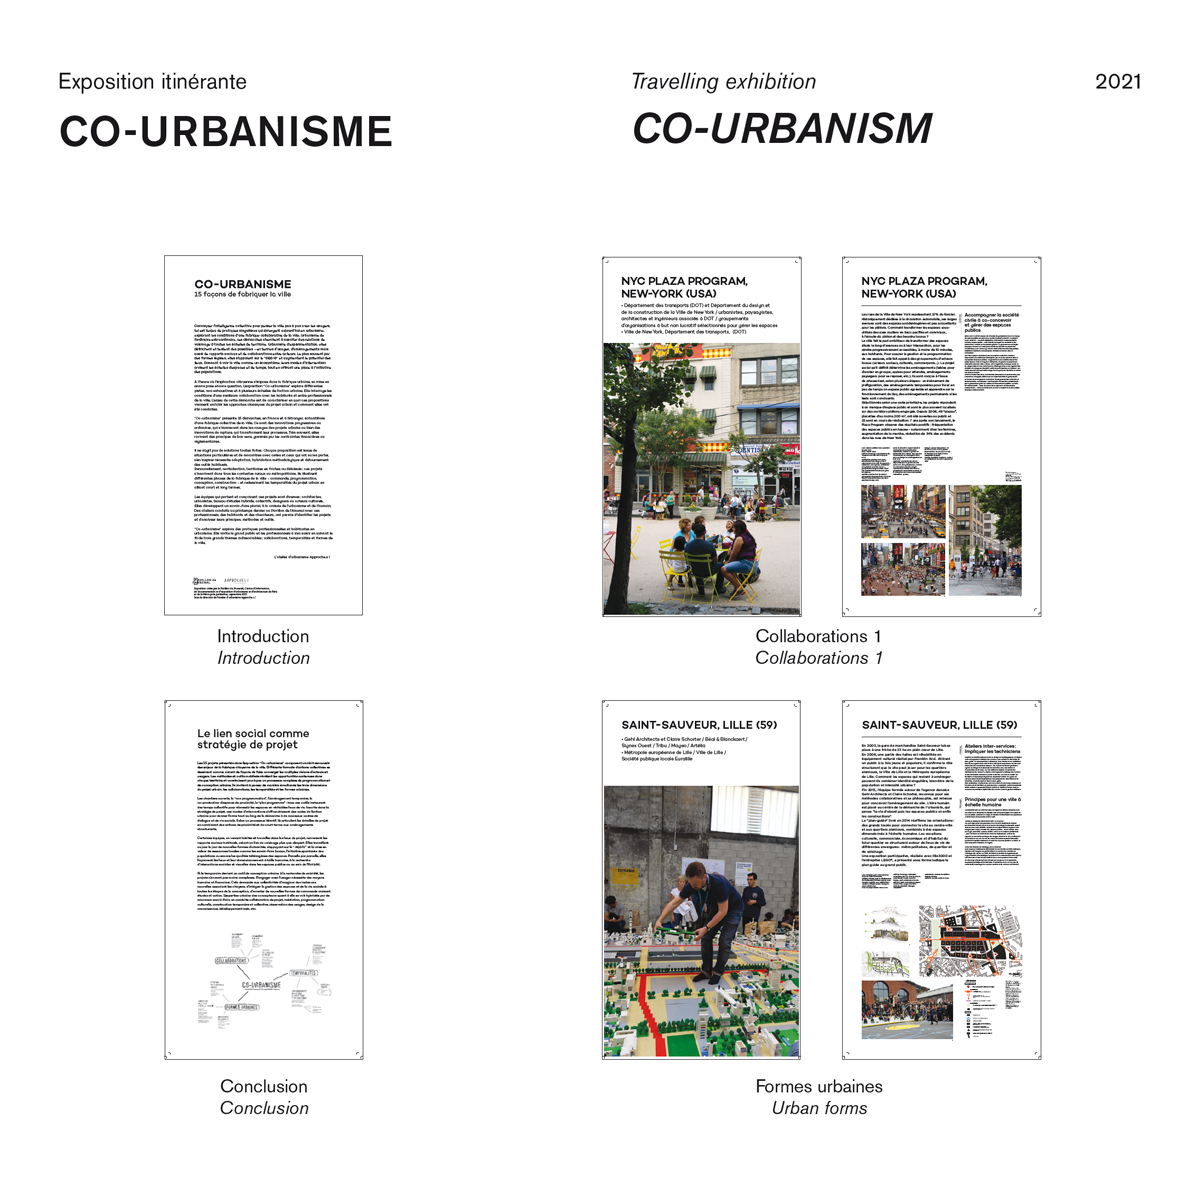 Co-urbanism